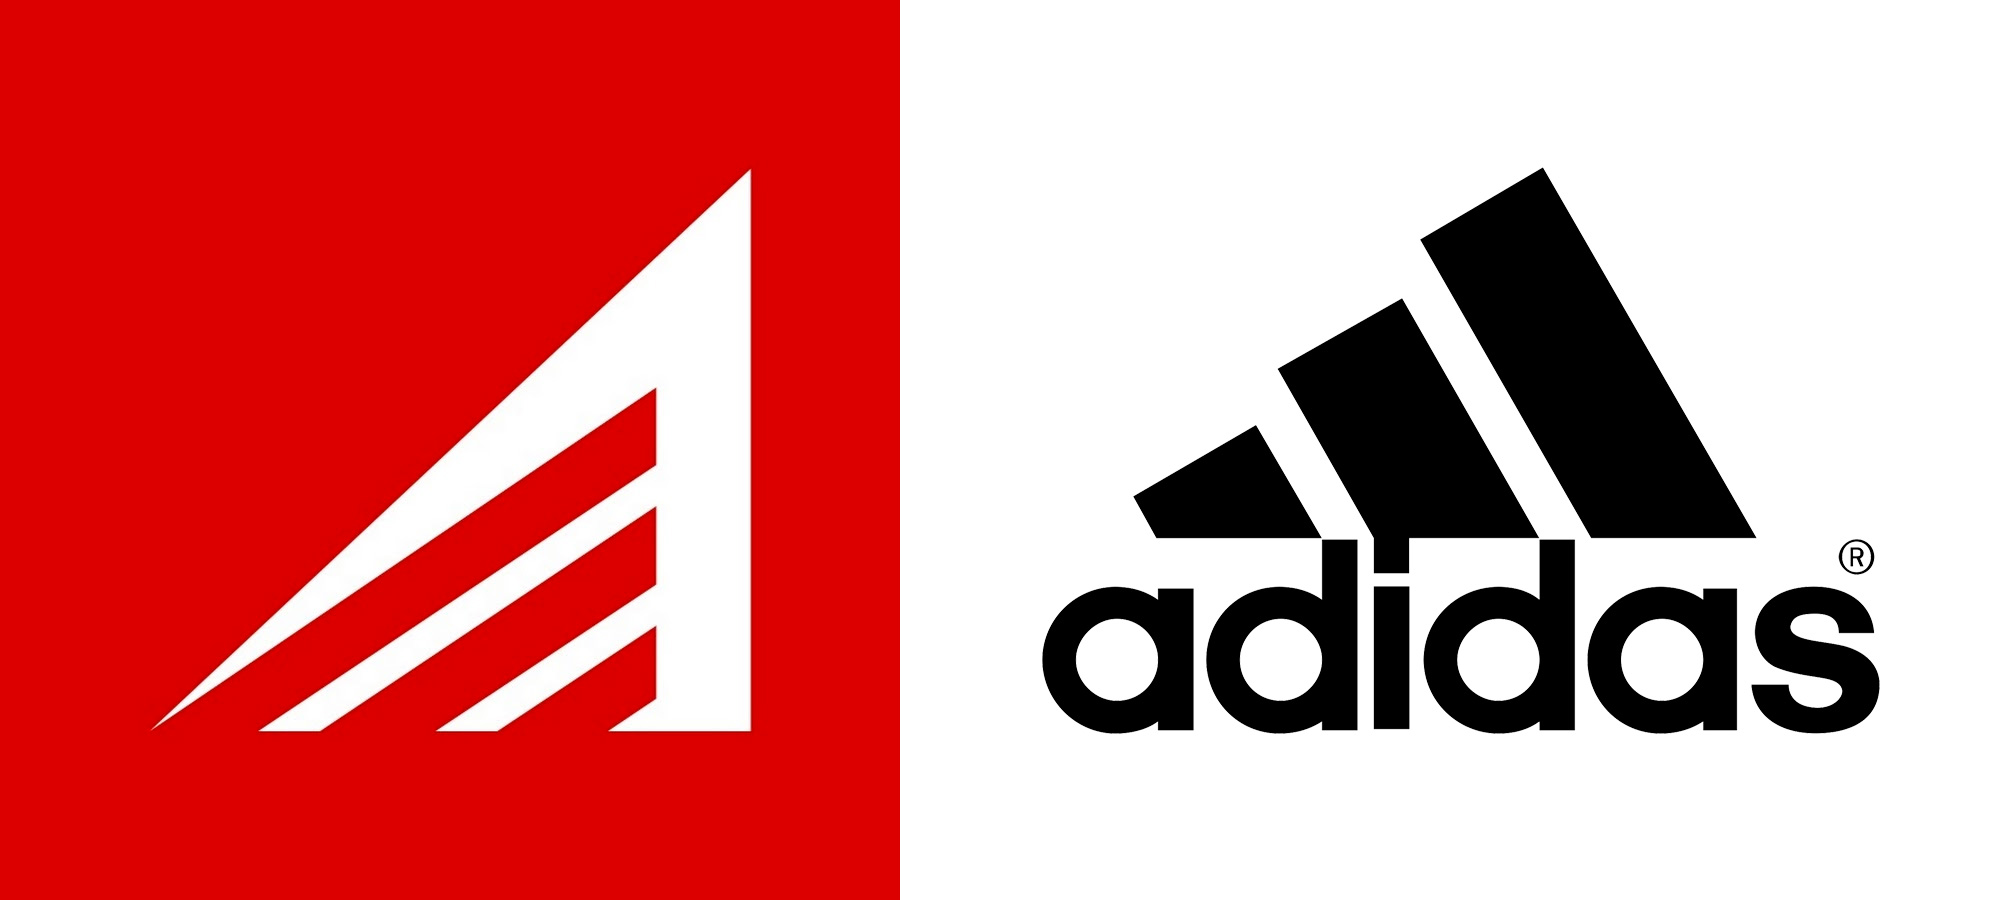 لفة الجزء تصرخ new adidas logo 2018 